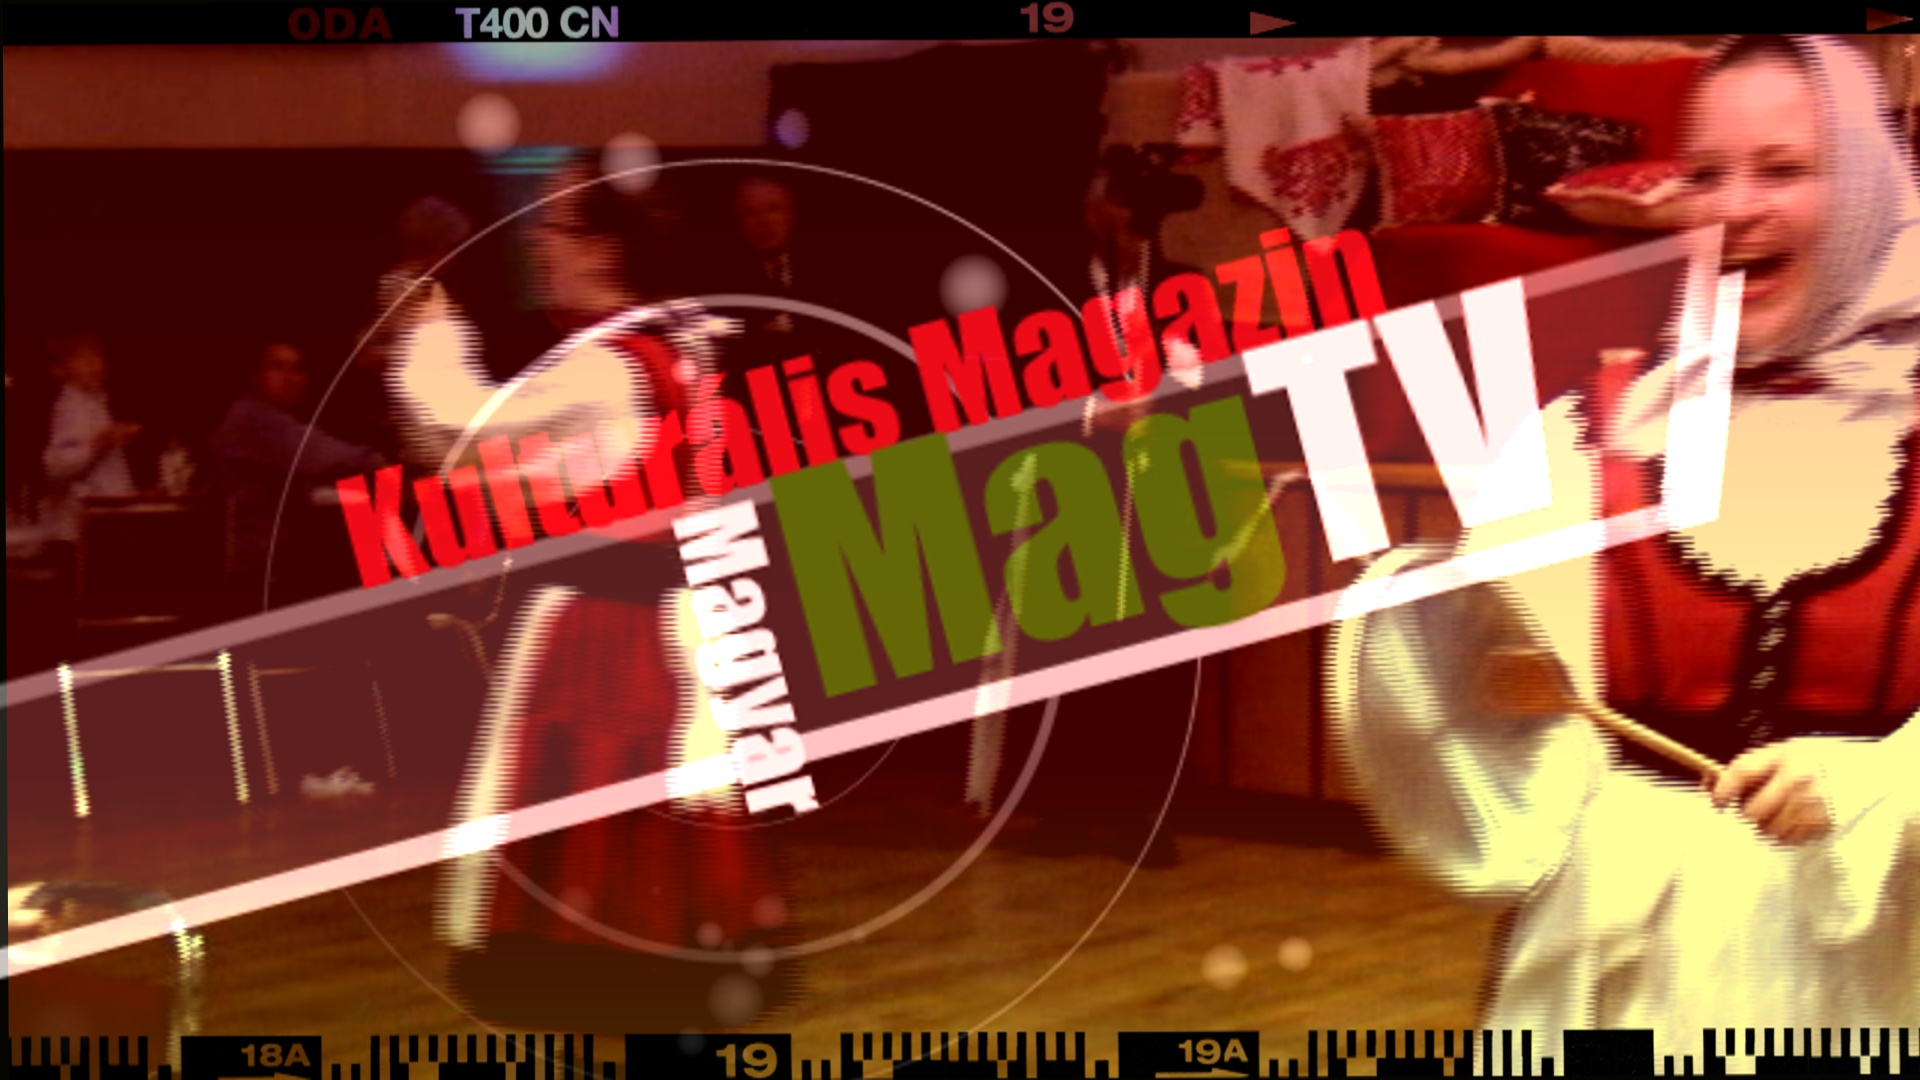 MagTV logo